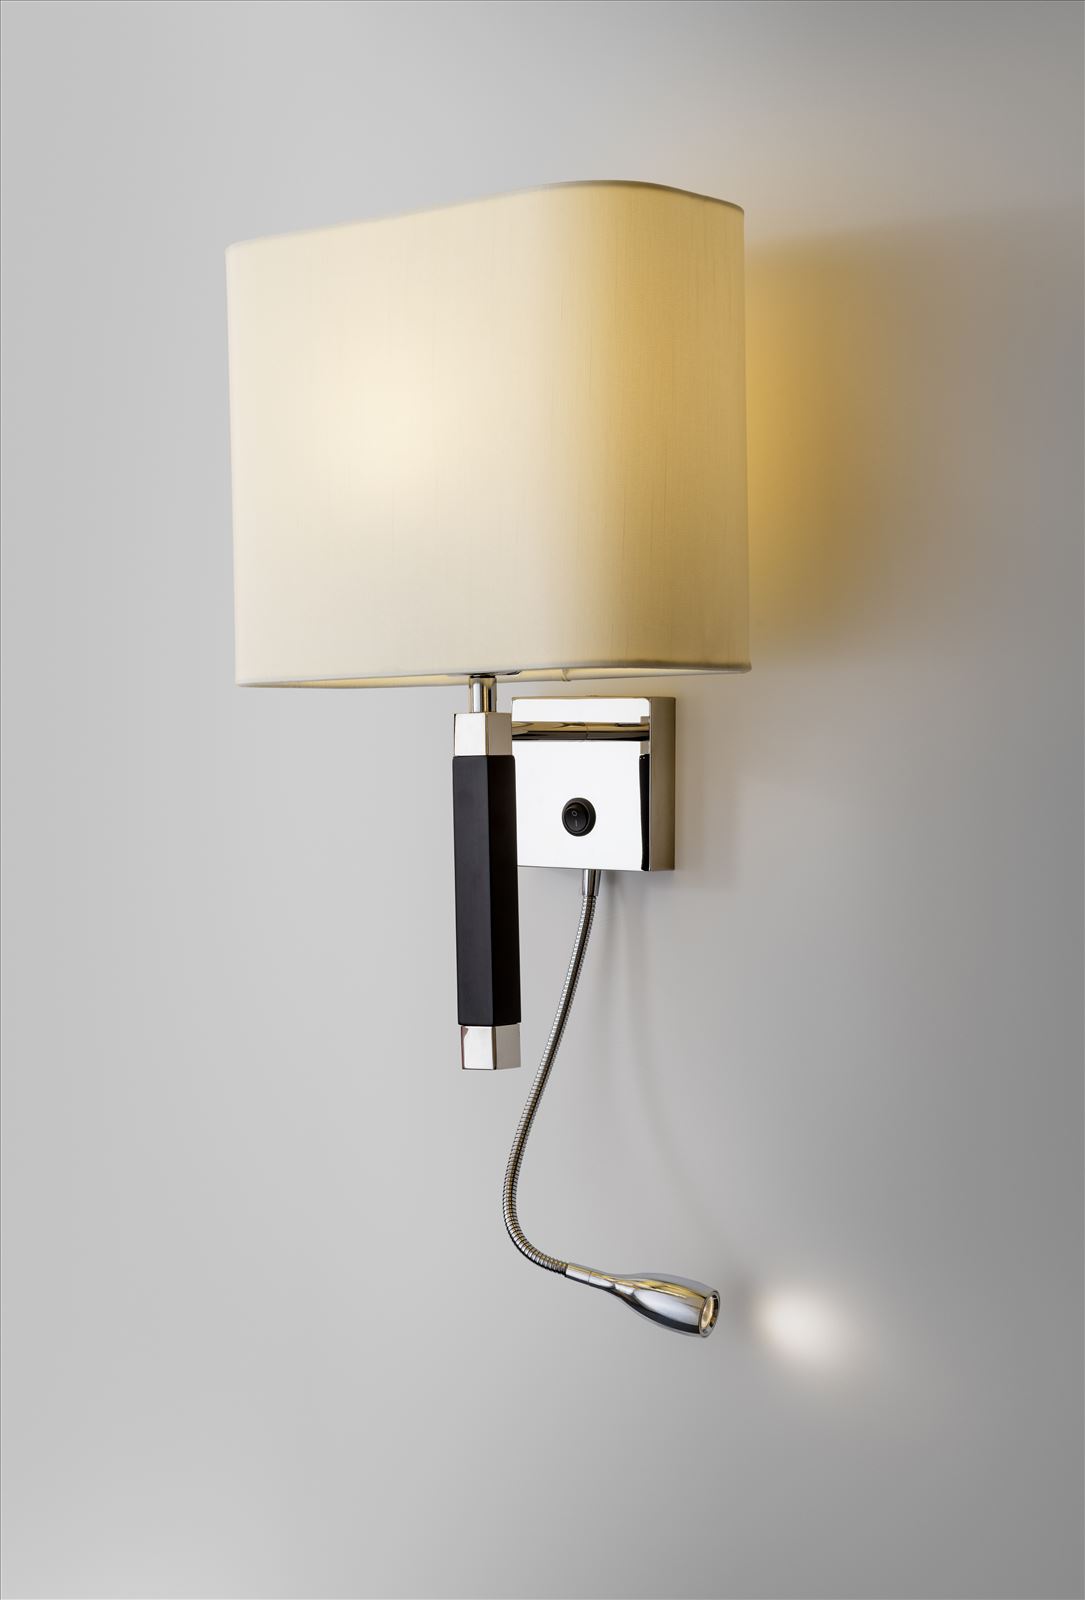 גופי תאורה בקטגוריית: מנורות קיר  ,שם המוצר: גולדן אורנג' 